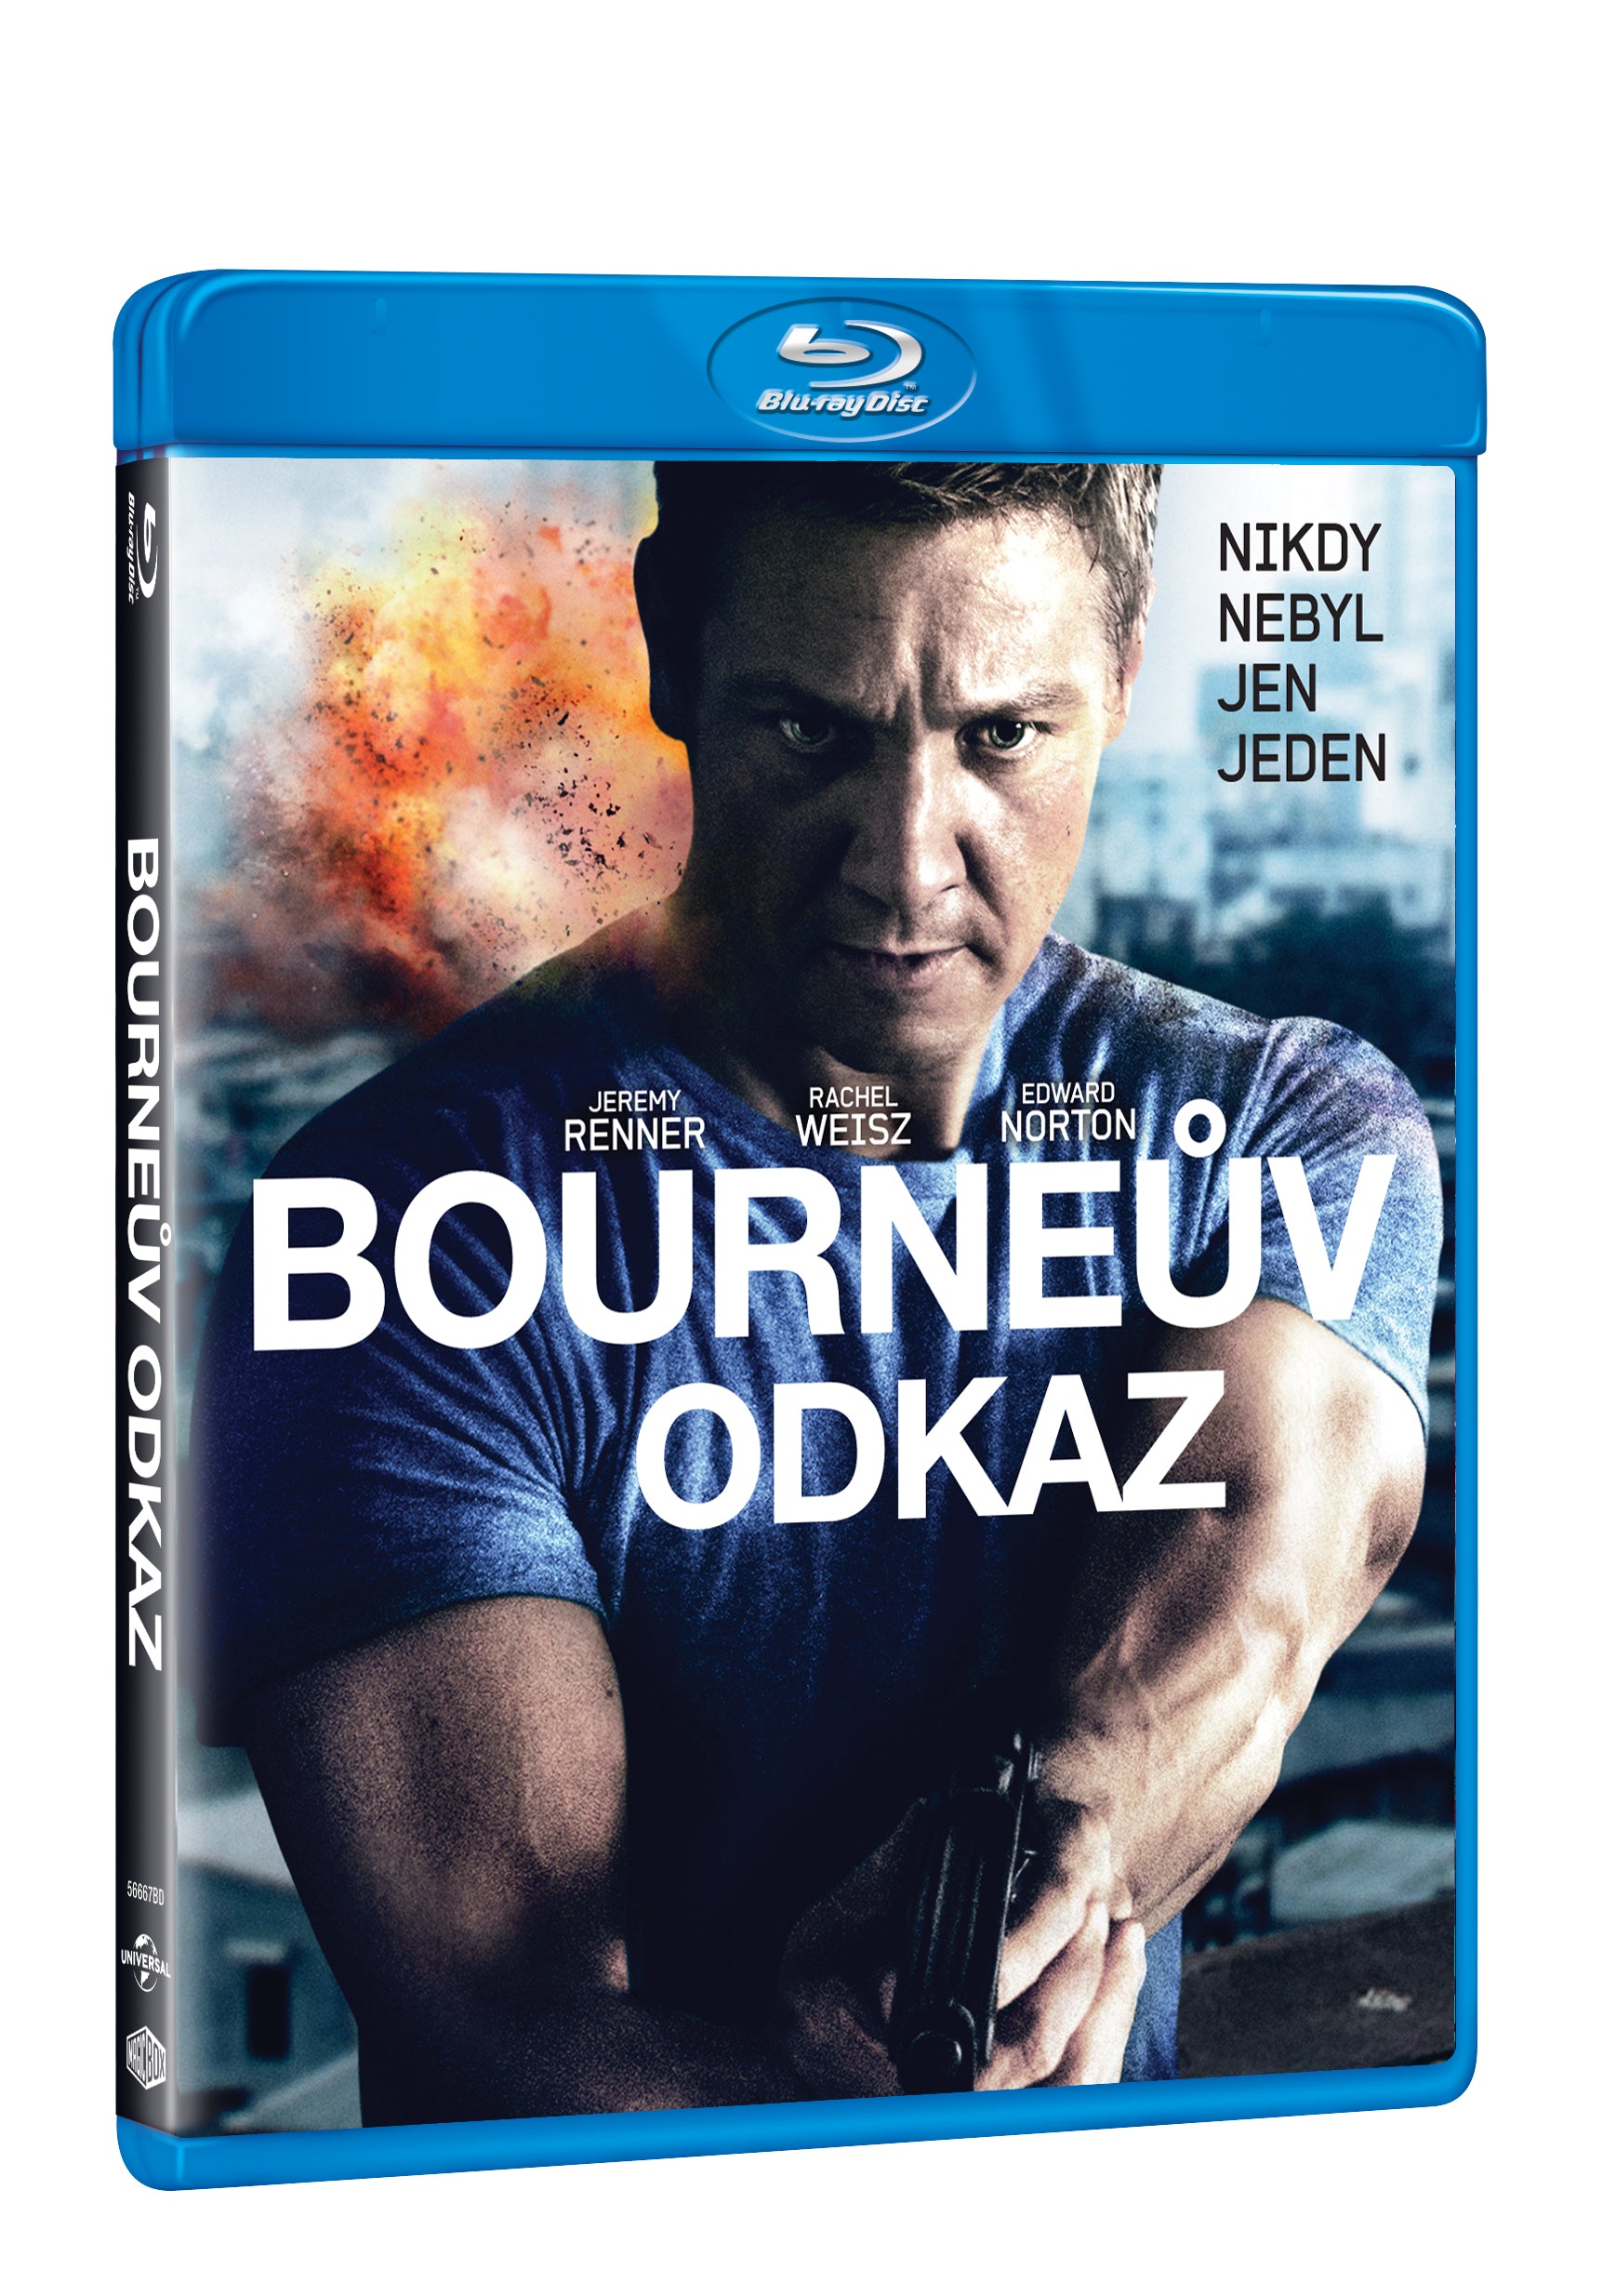 Bourneuv odkaz BD / The Bourne Legacy - Czech version